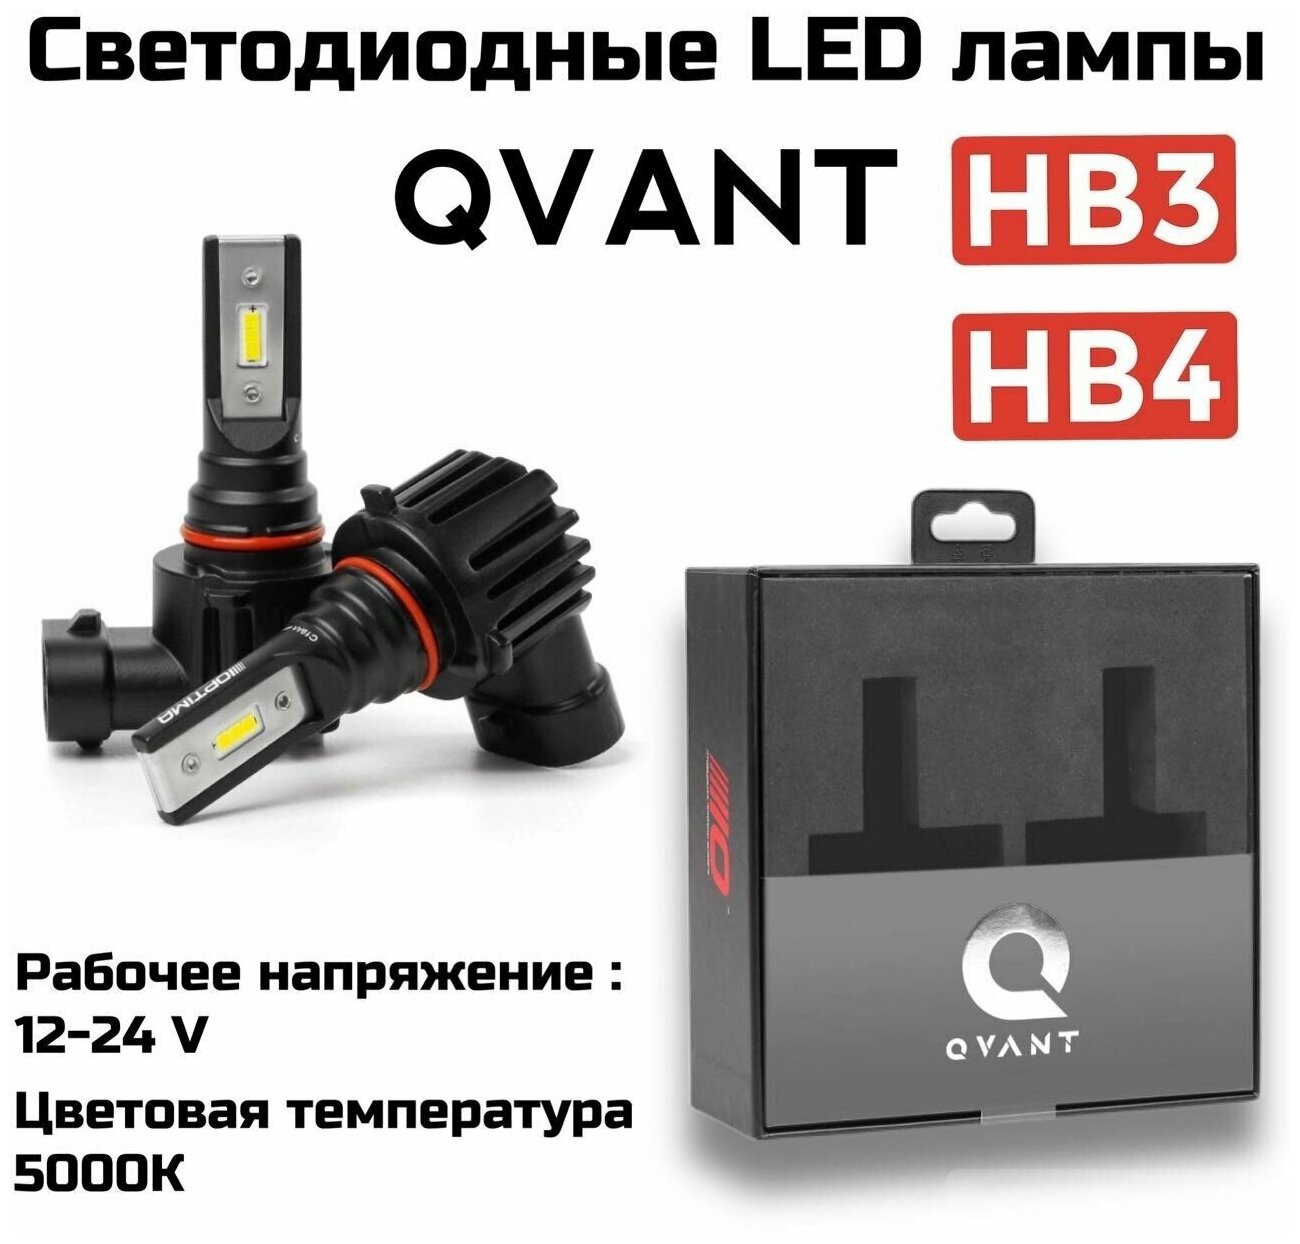 Светодиодные автомобильные лампы Optima LED QVANT HB3 / HB4 9-12V 5000K